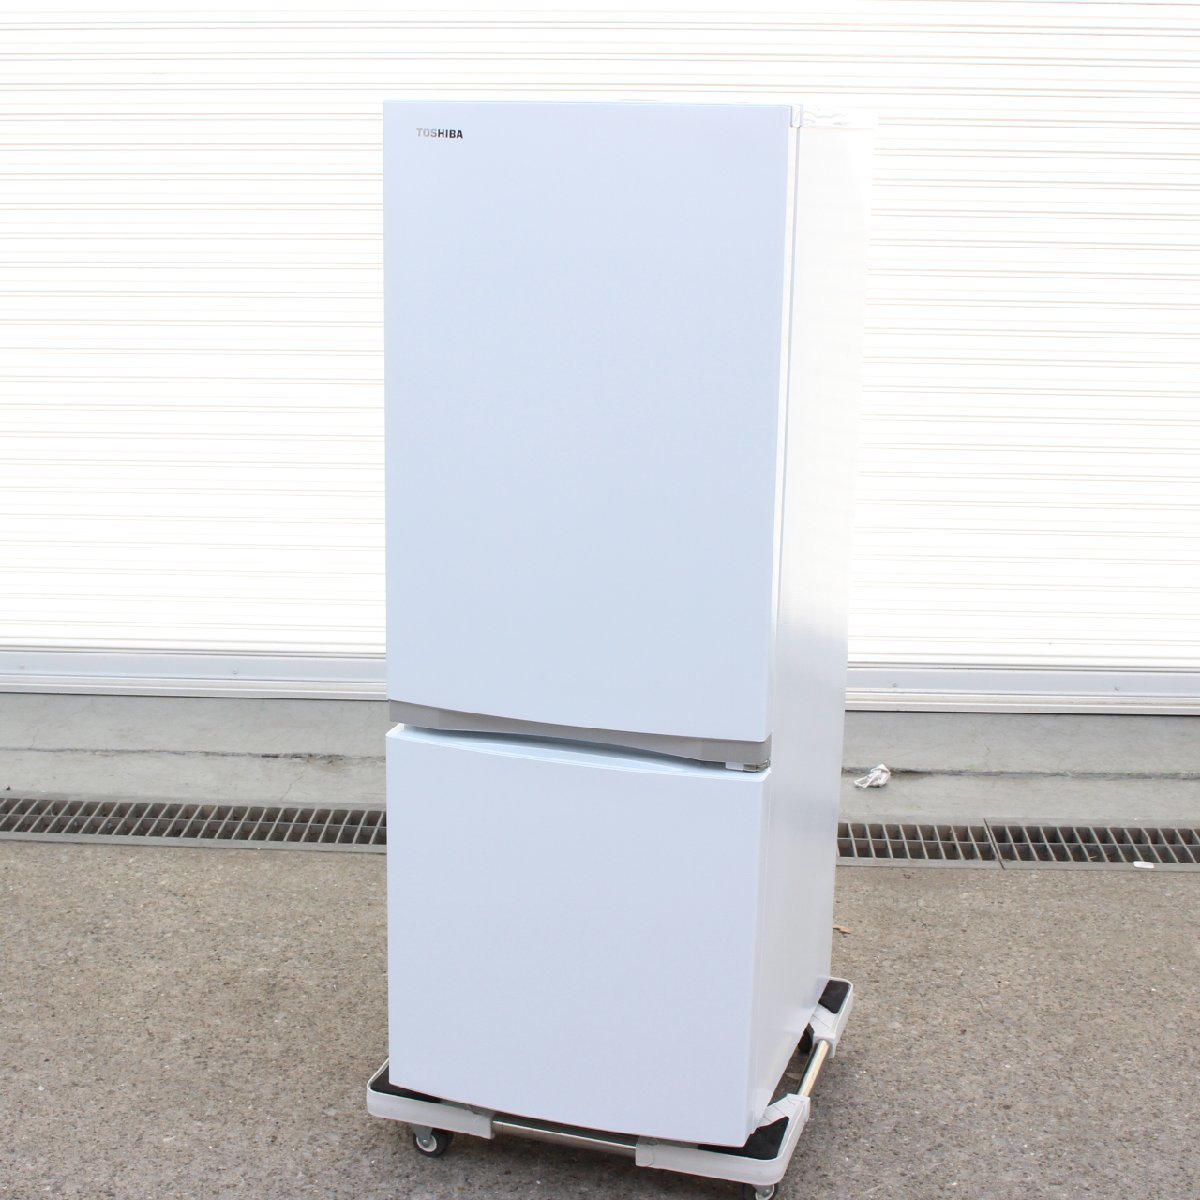 東京都稲城市にて 東芝 2ドア 153L 2021年製 GR-S15BS TOSHIBA ノンフロン冷凍冷蔵庫 GR-S15BS 2021年製 を出張買取させて頂きました。